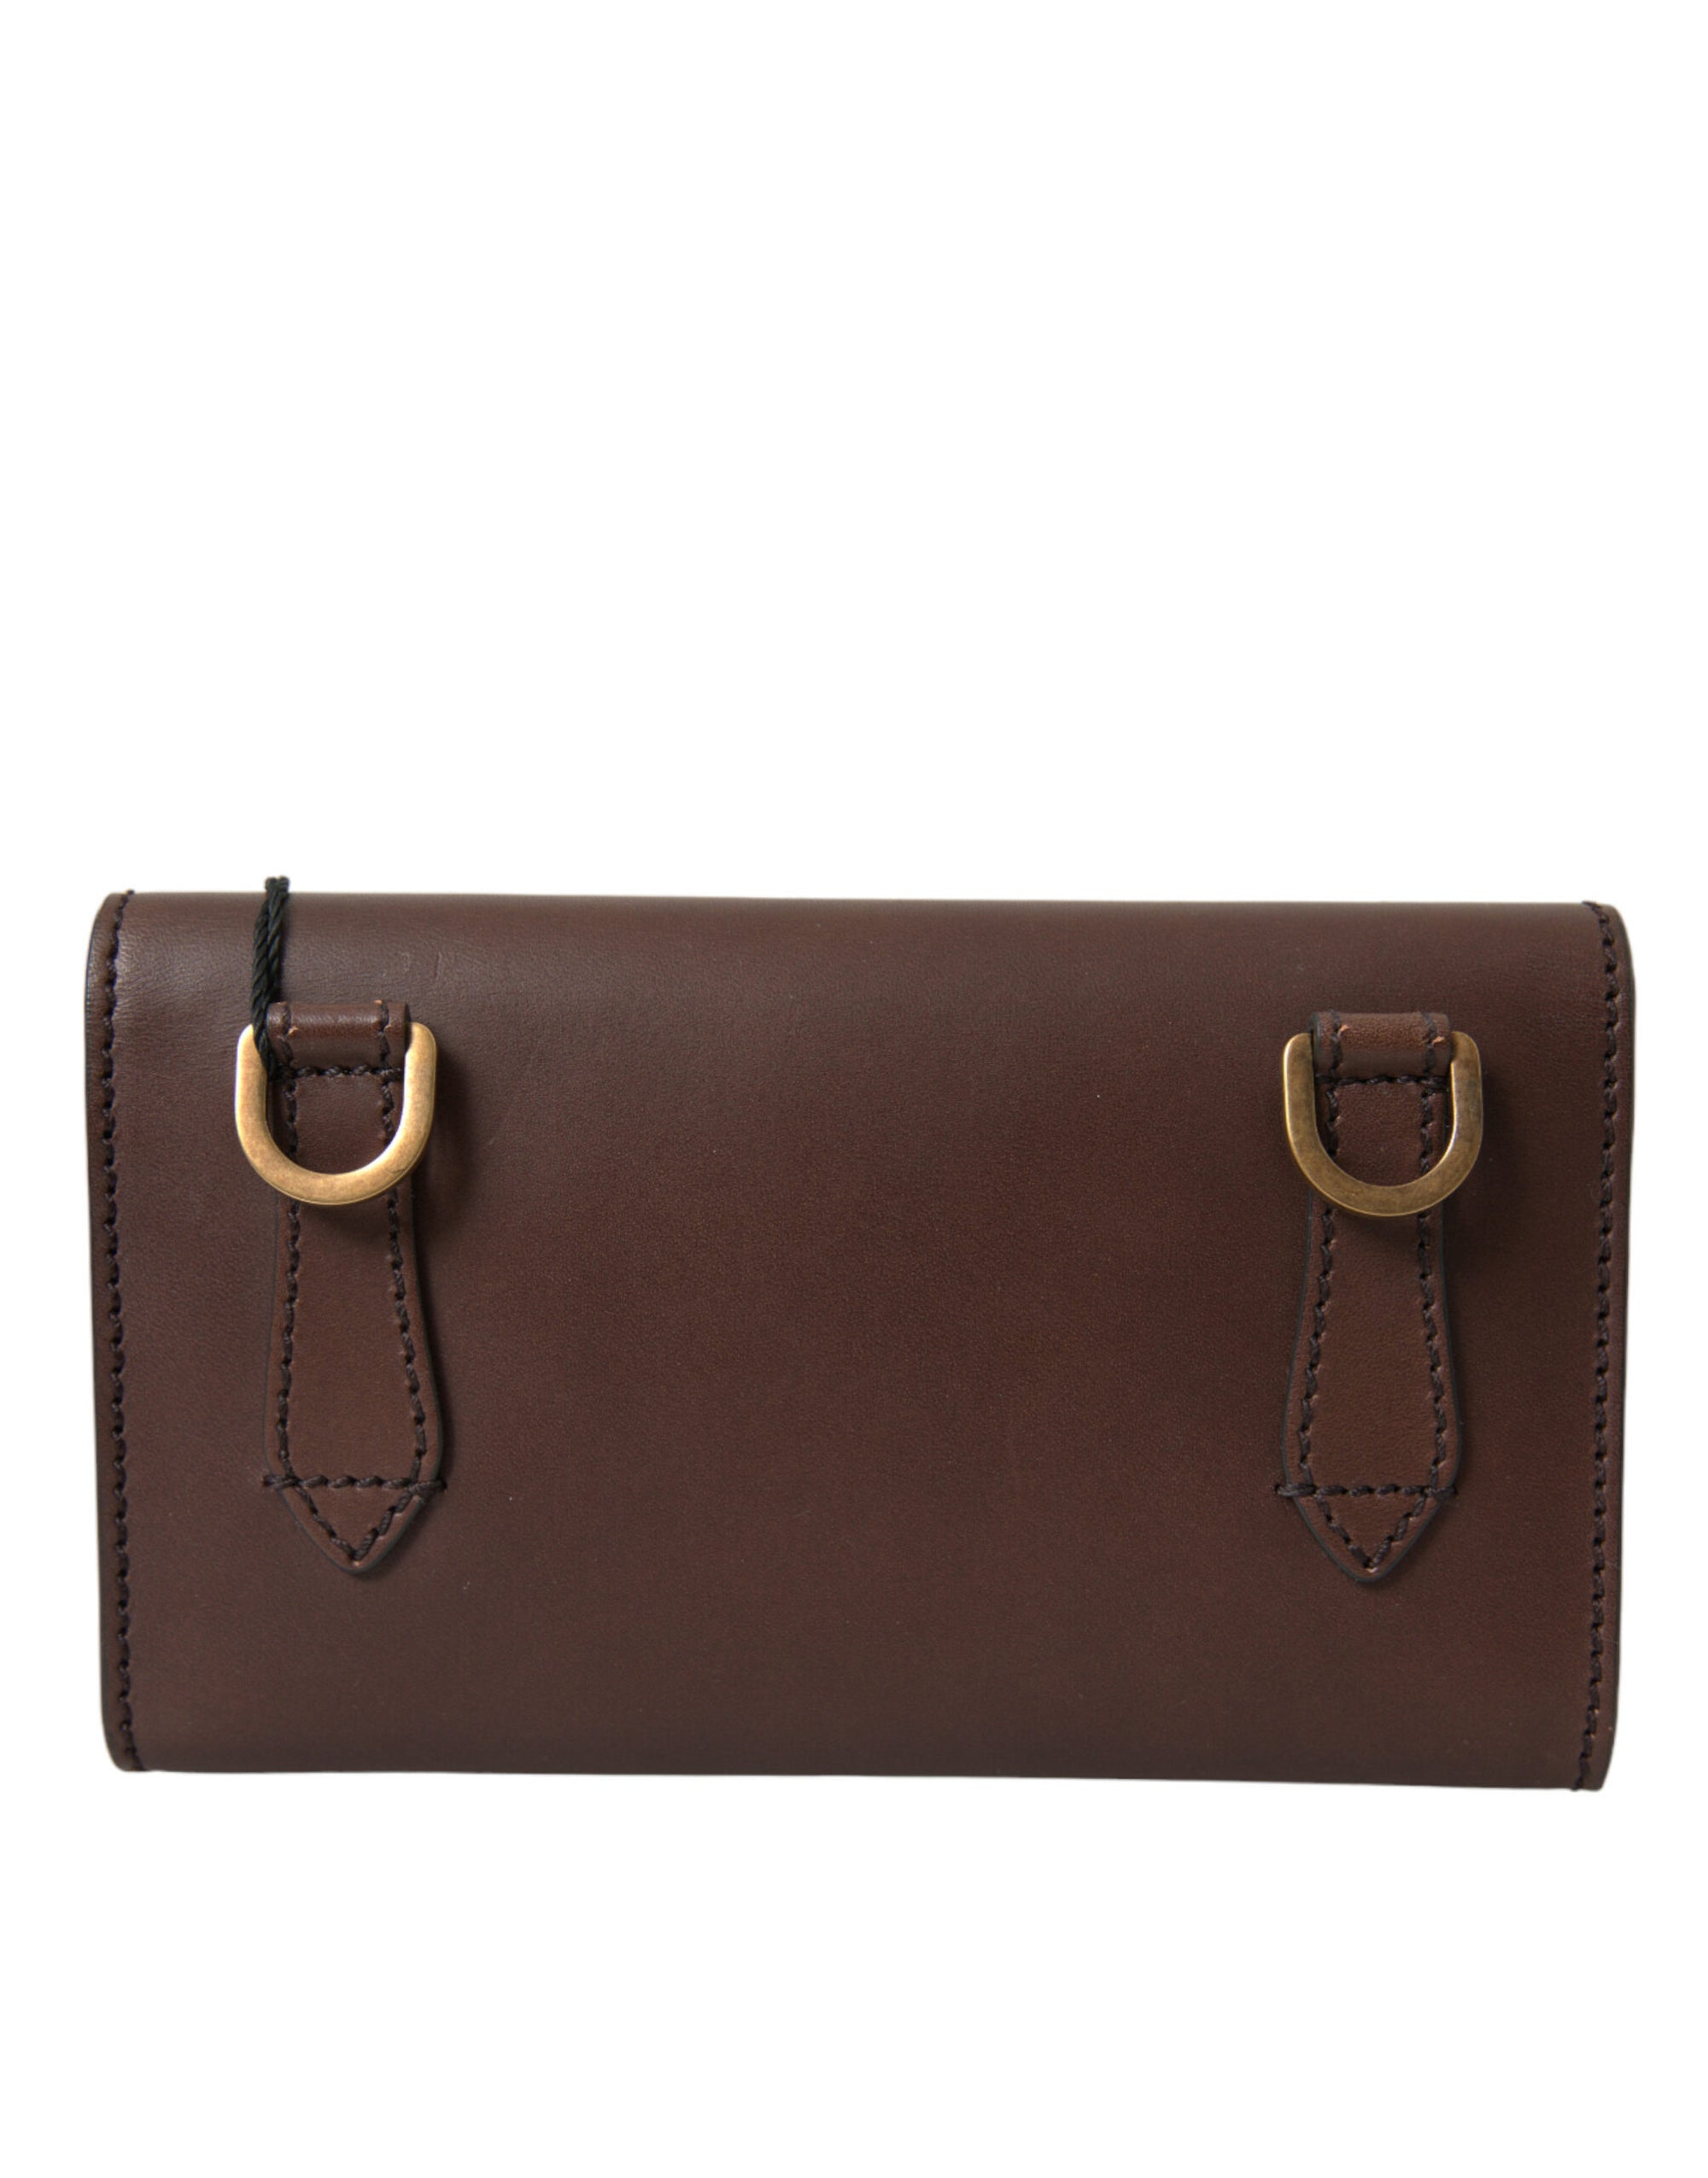 Elegant Brown Leather Shoulder Bag with Gold Detailing